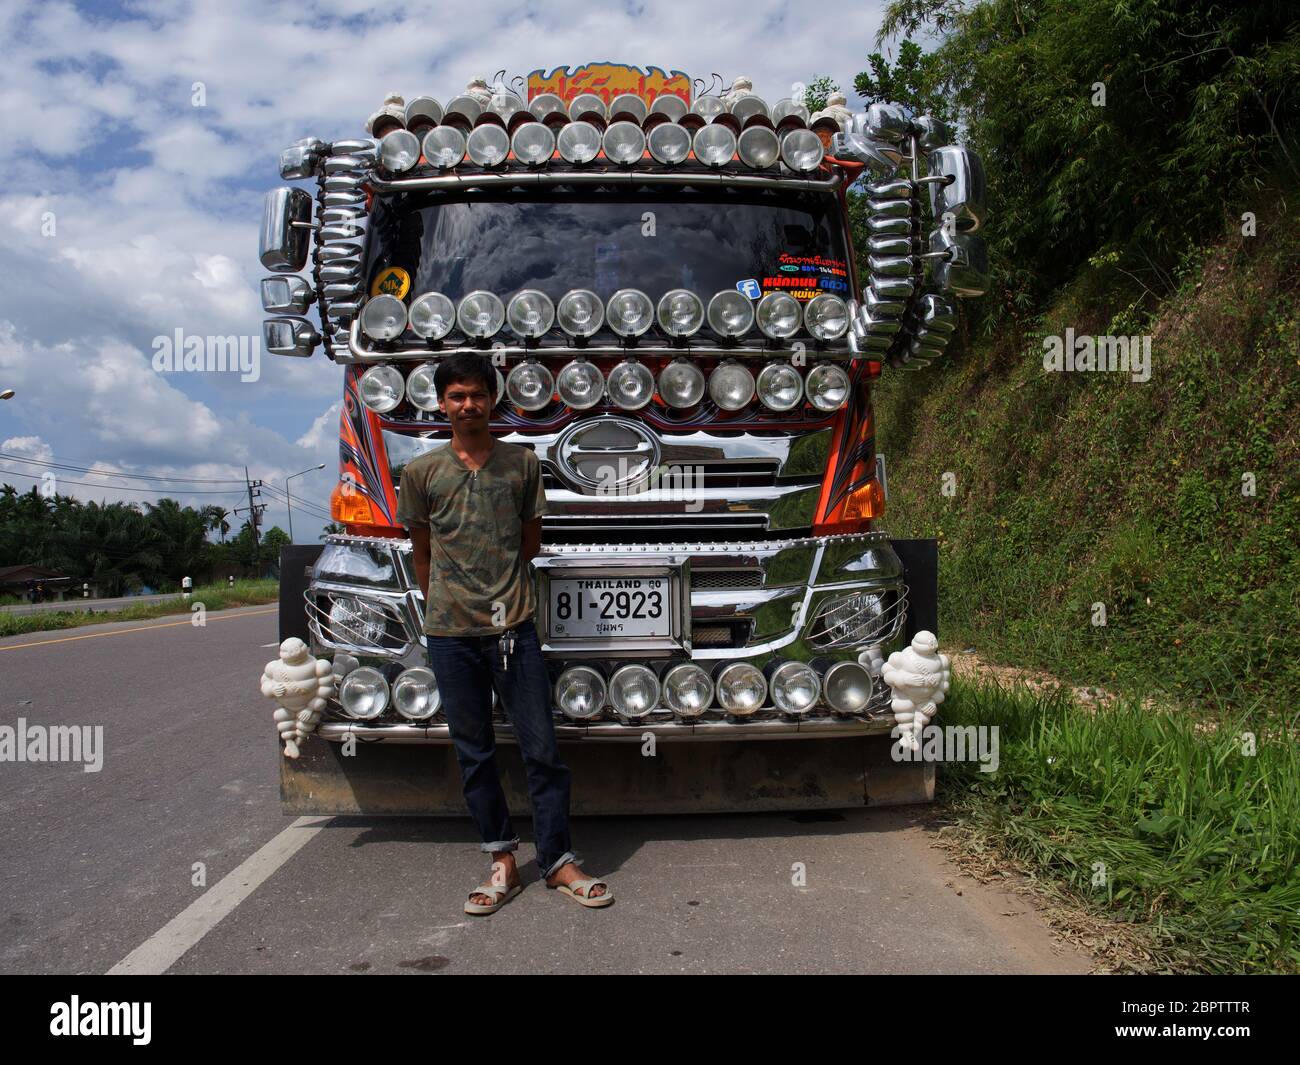 Camion decorato in Thailandia Foto Stock